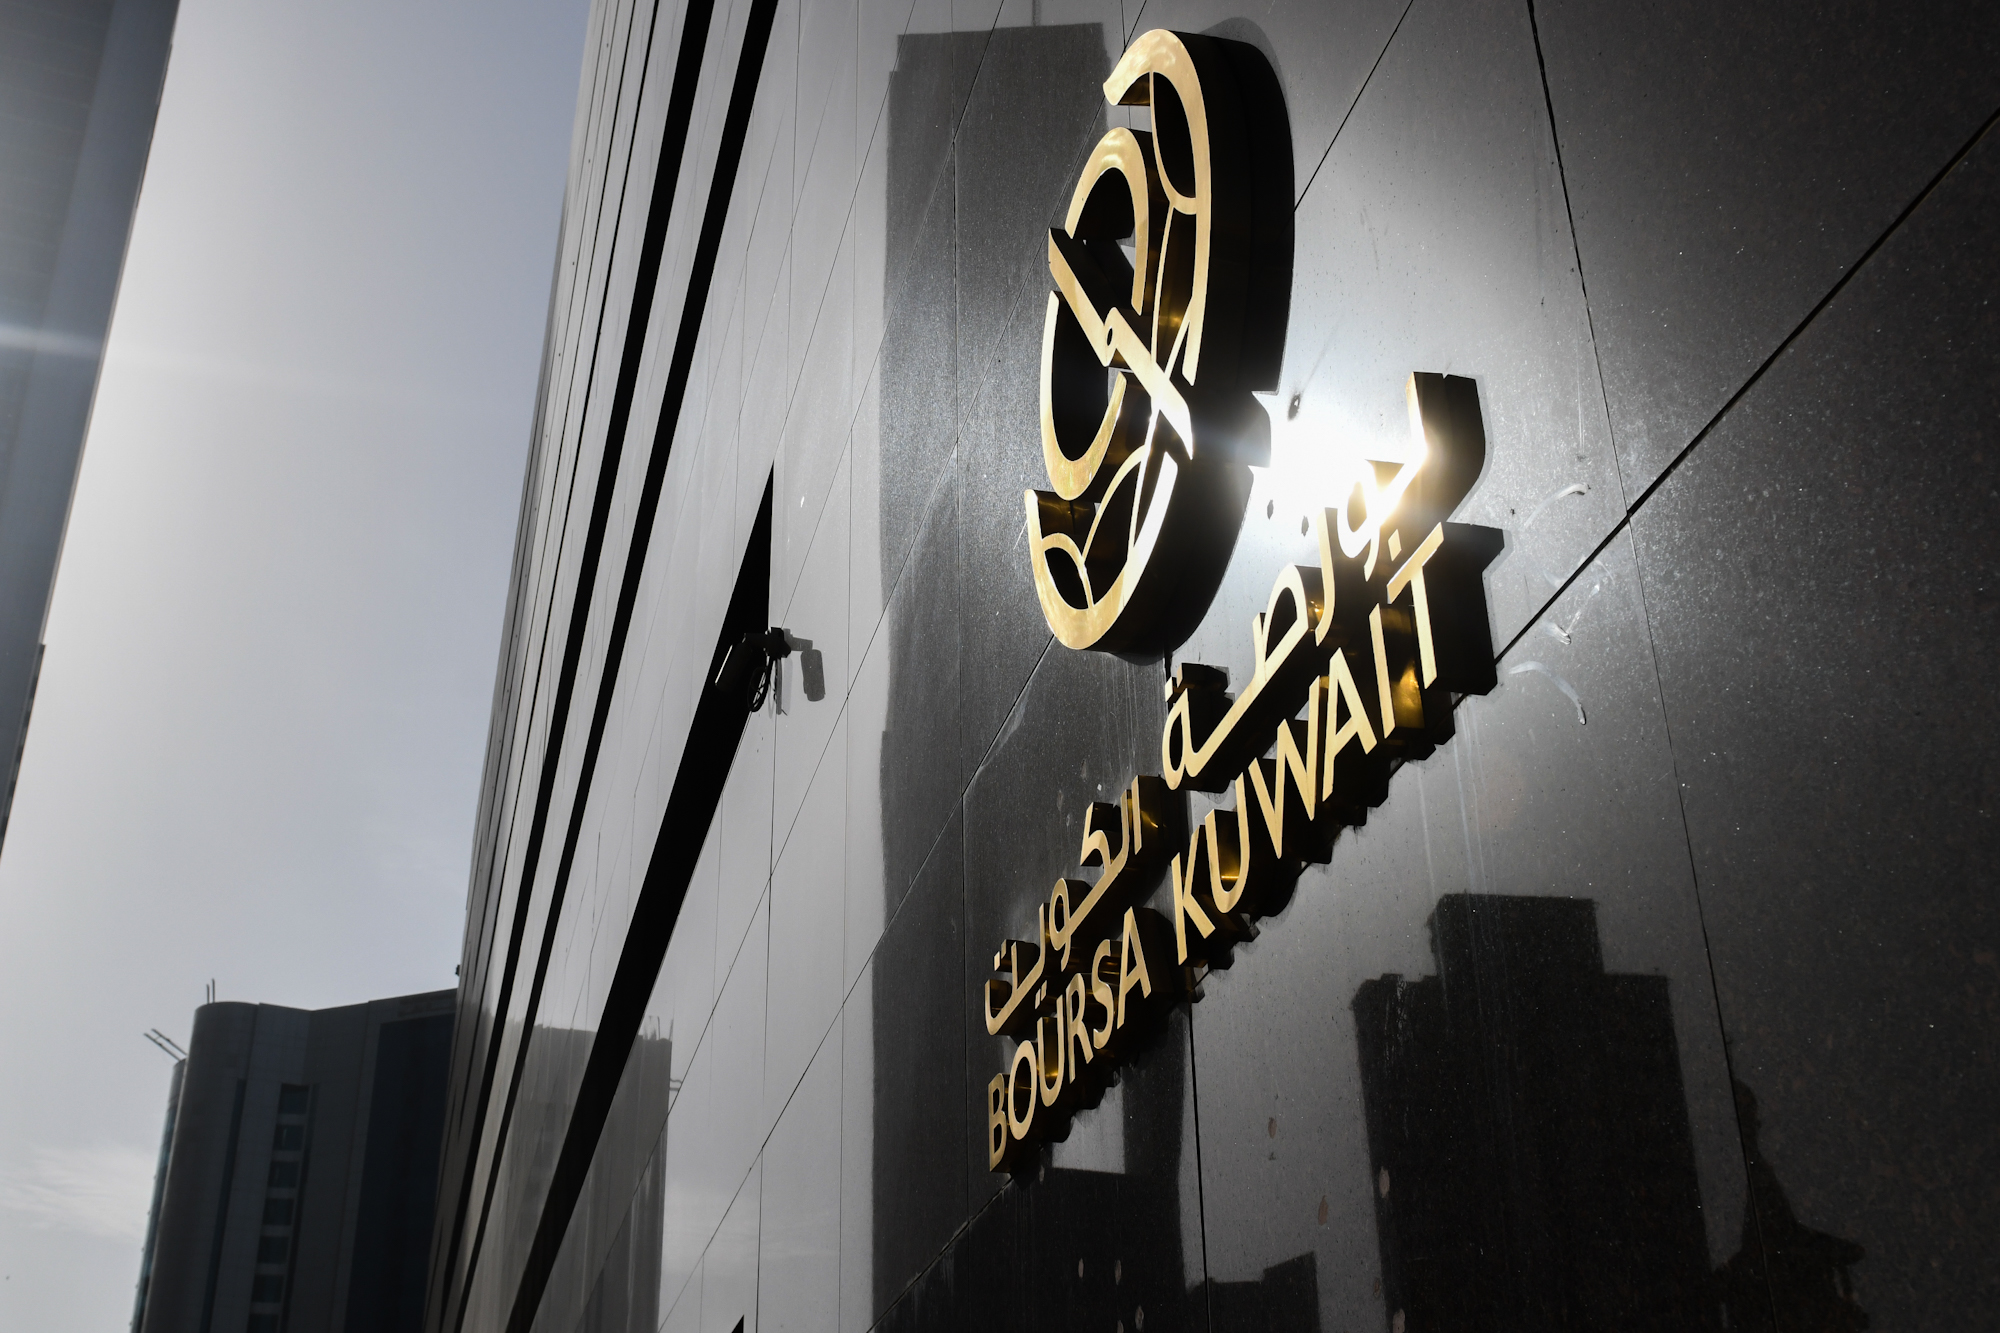 بورصة الكويت تغلق تعاملاتها على انخفاض المؤشر العام 2ر34 نقطة إلى 15ر7433 بنسبة انخفاض 46ر0 في المئة                                                                                                                                                      